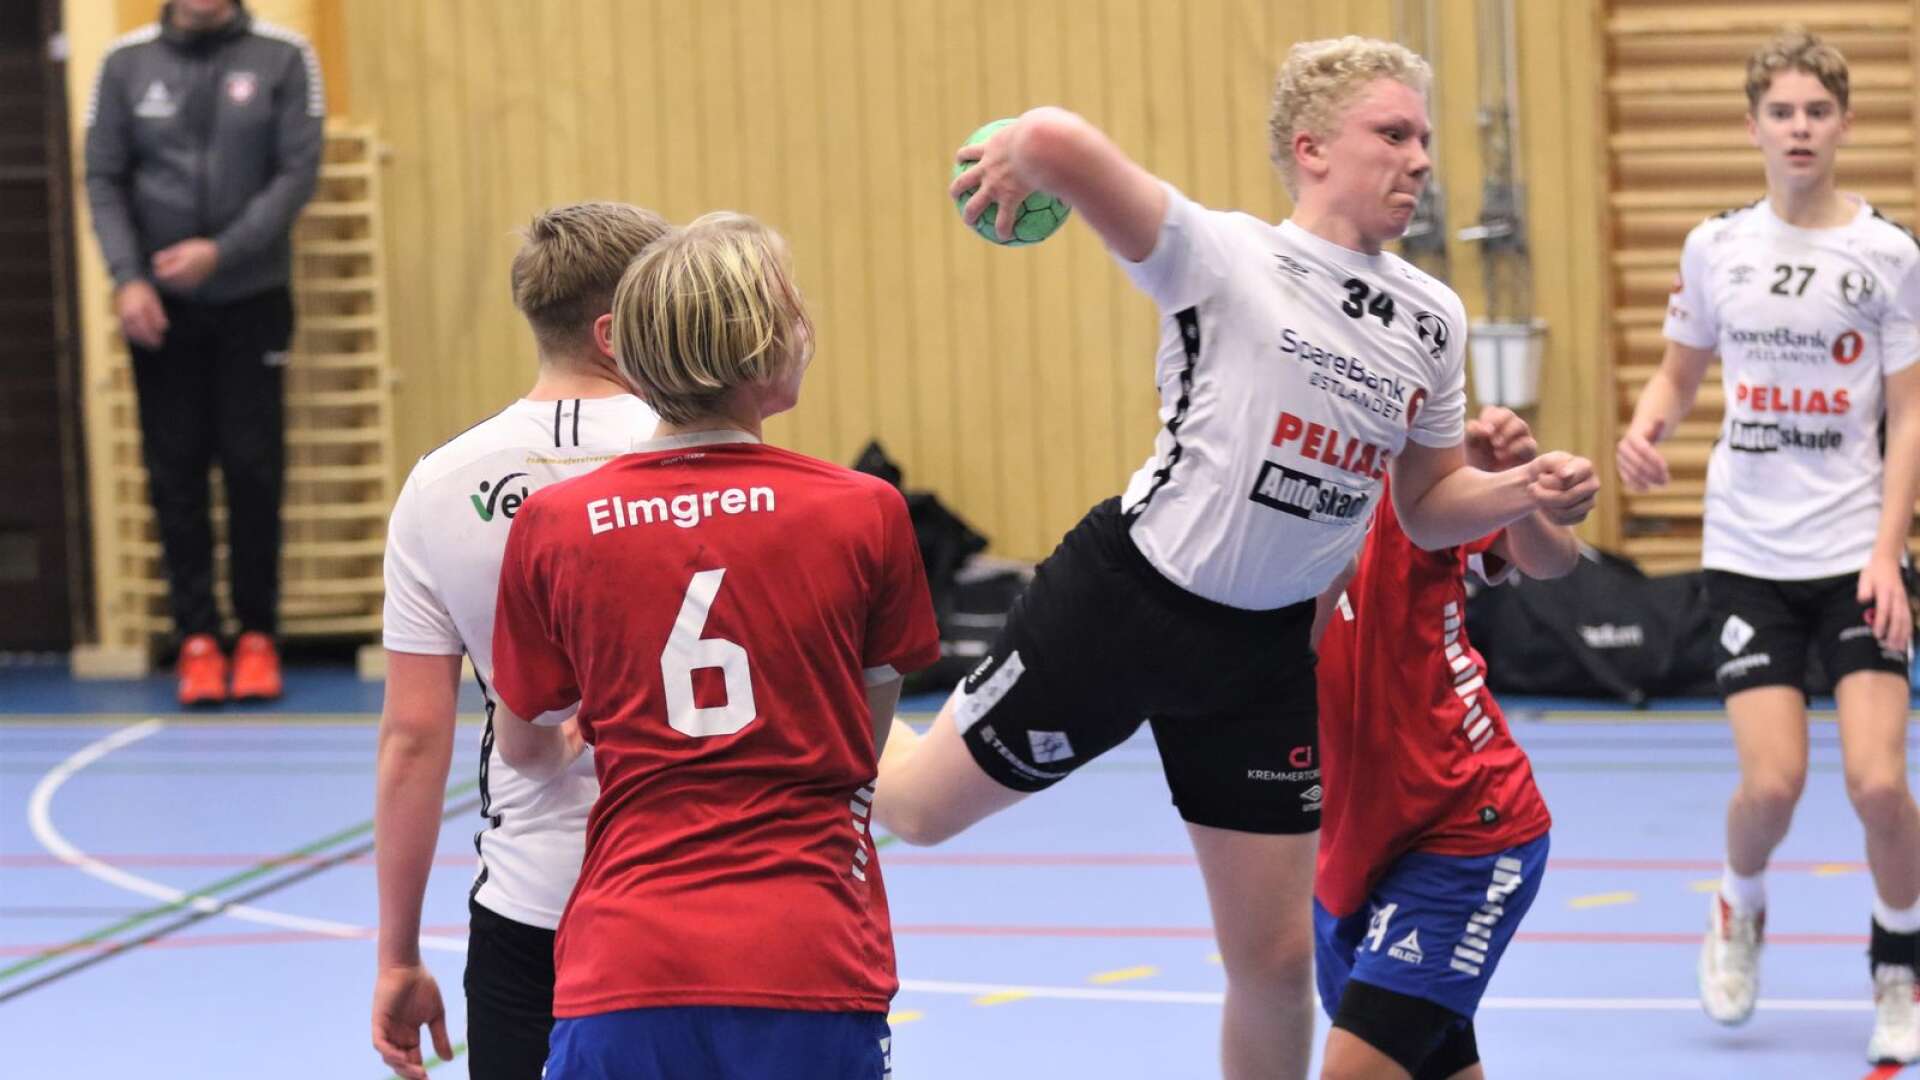 Elverum (vitt) ifrån Norge är ett utländskt inslag i årets upplaga av Skadevi cup. Klubben kommer till spel med tre lag. Bilden är ifrån Elverum P16-lag som spelade match mot Täby under fredagen.